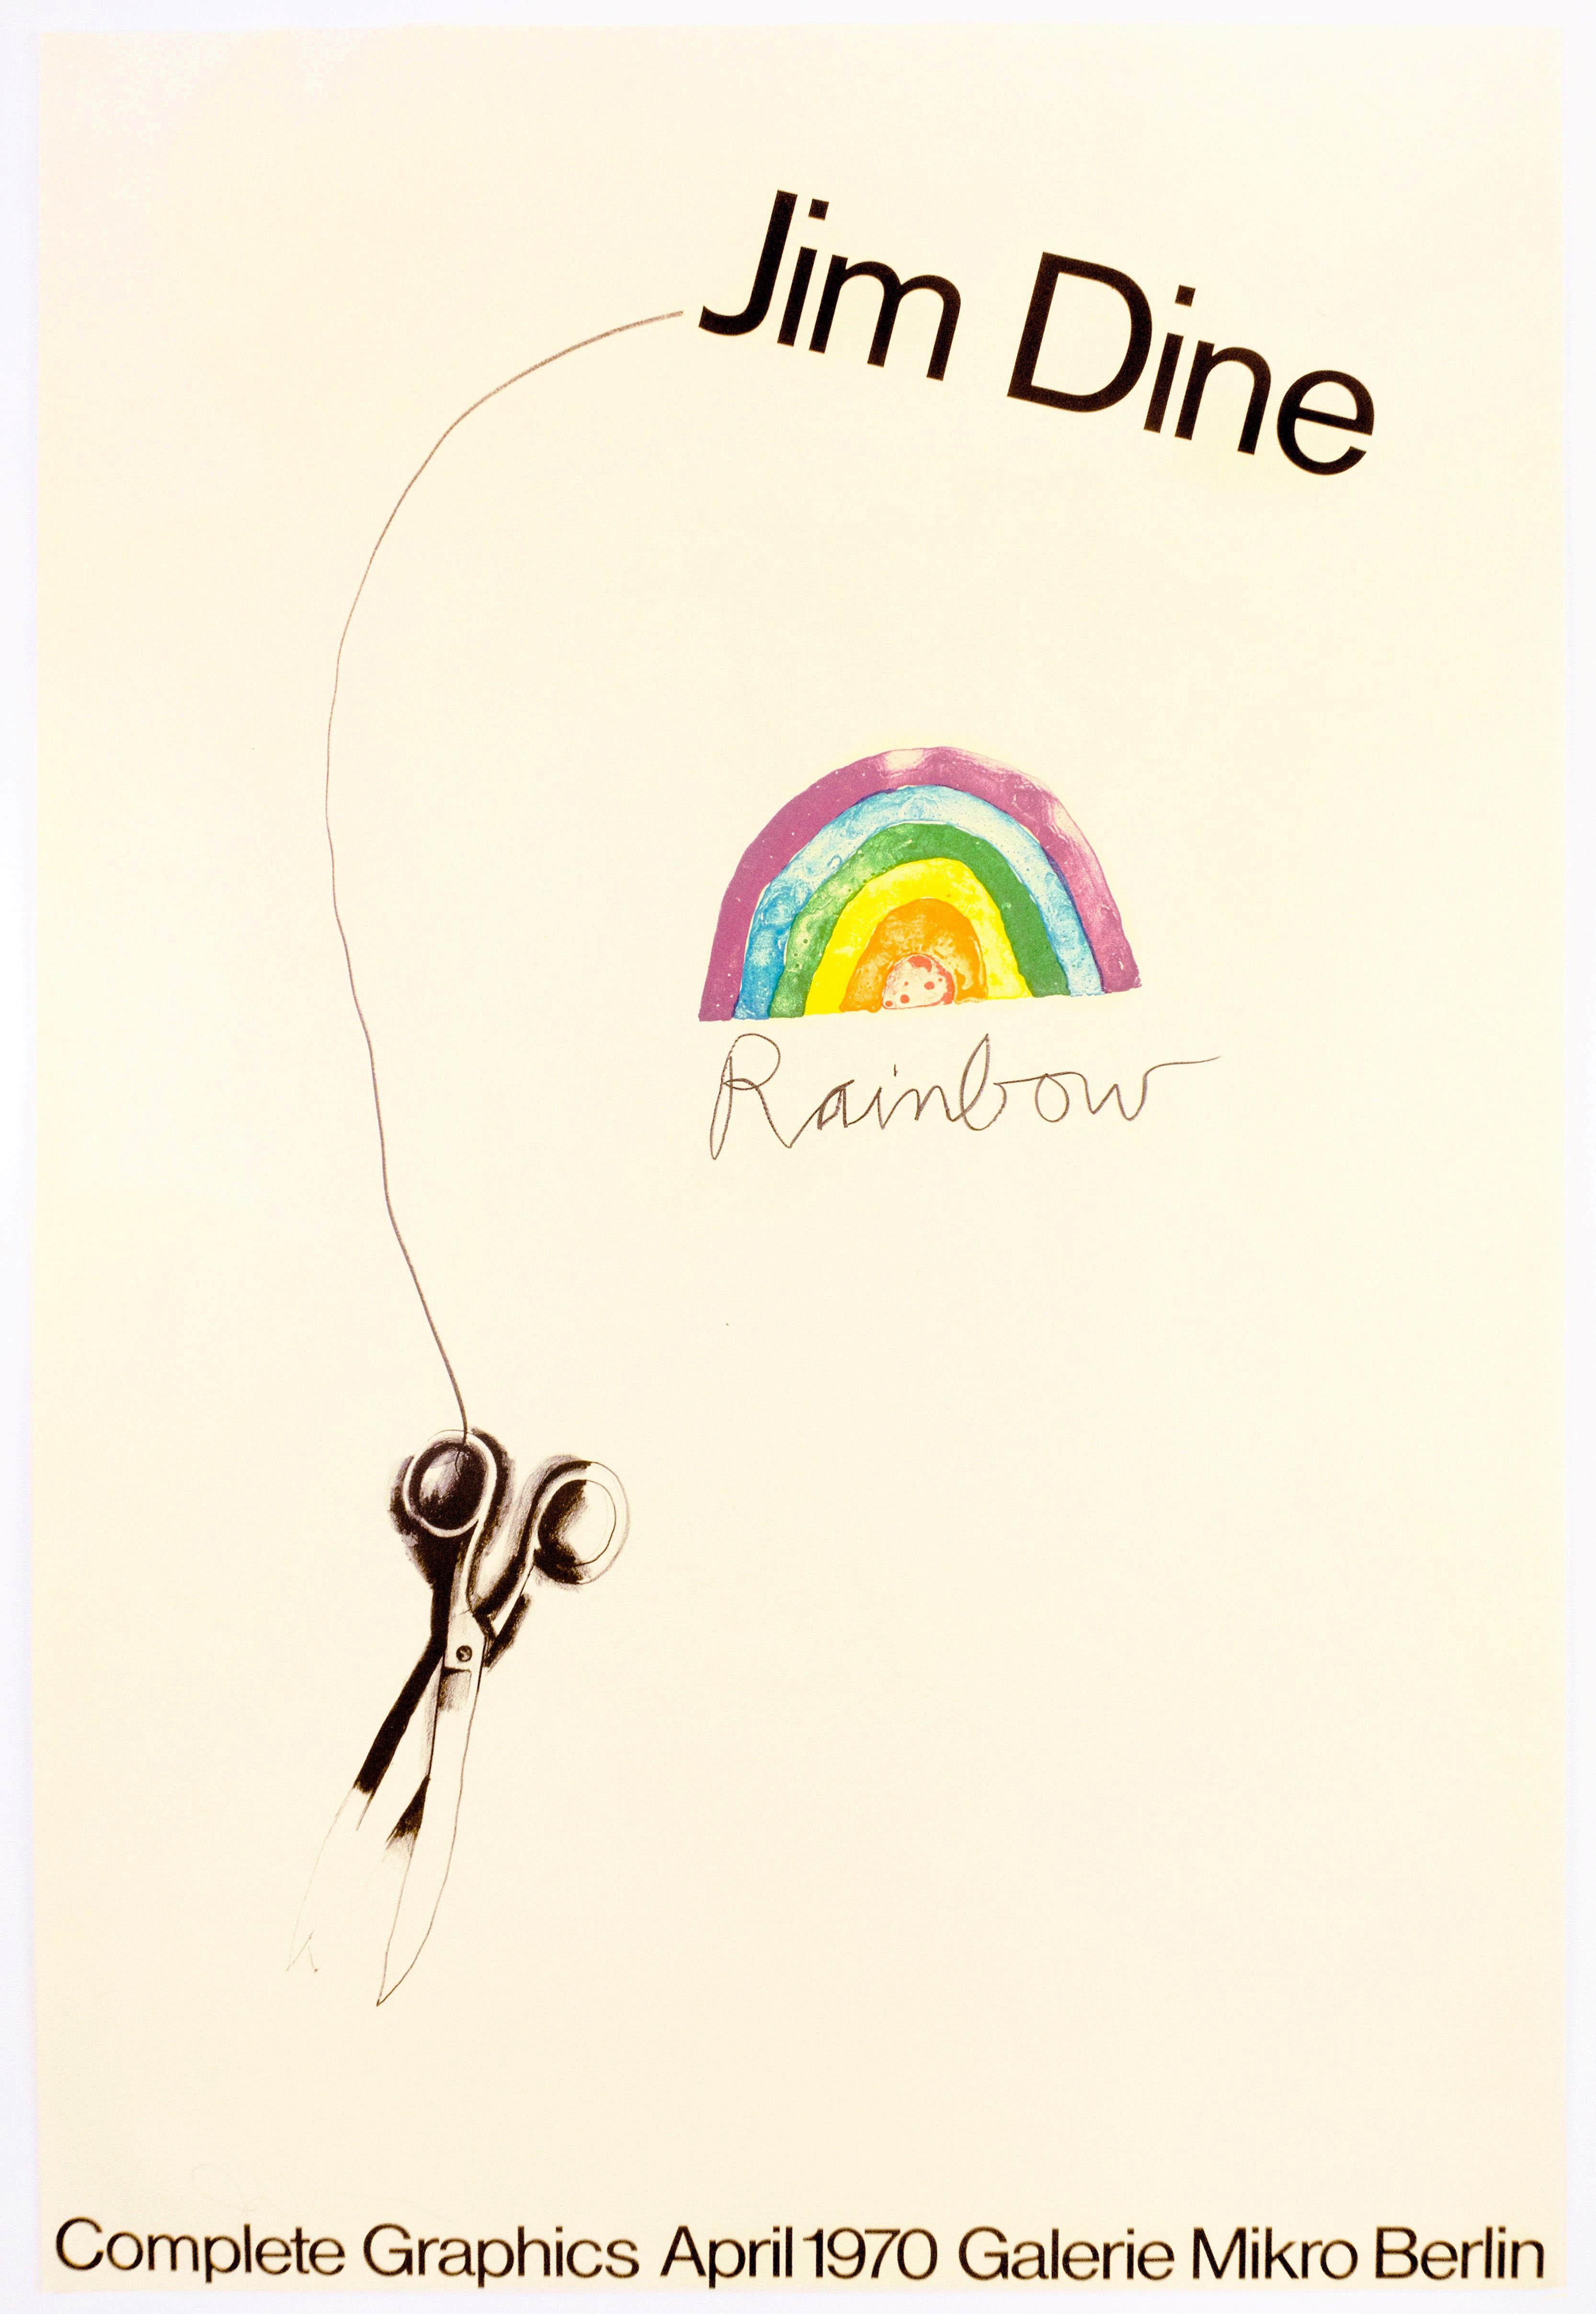 Signiertes Plakat für Jim Dines Ausstellung Complete Graphics von 1970 in der Galerie Mikro, Berlin. Gedruckt auf feinem Papier von denselben Platten, die für den Druck von Dines Ausgabe "Scissors and Rainbow" 1969 verwendet wurden. Im Gegensatz zu